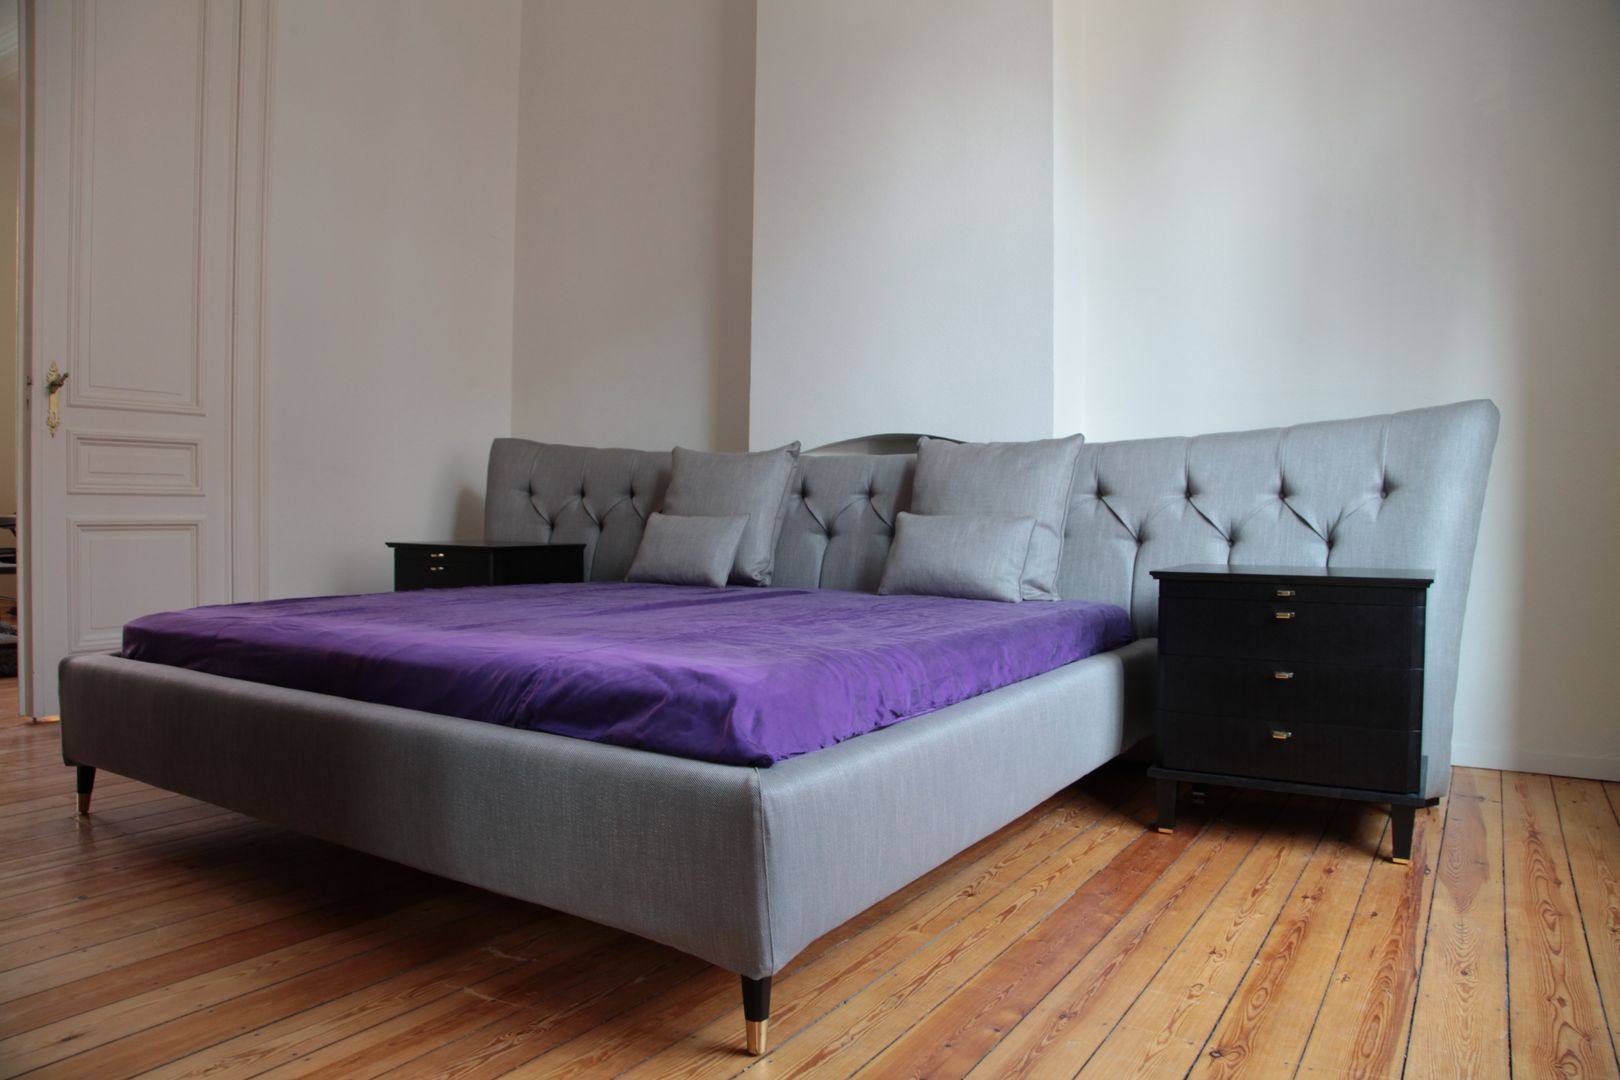 Appartement Bruxelles, pure joy interior design pure joy interior design Camera da letto in stile classico